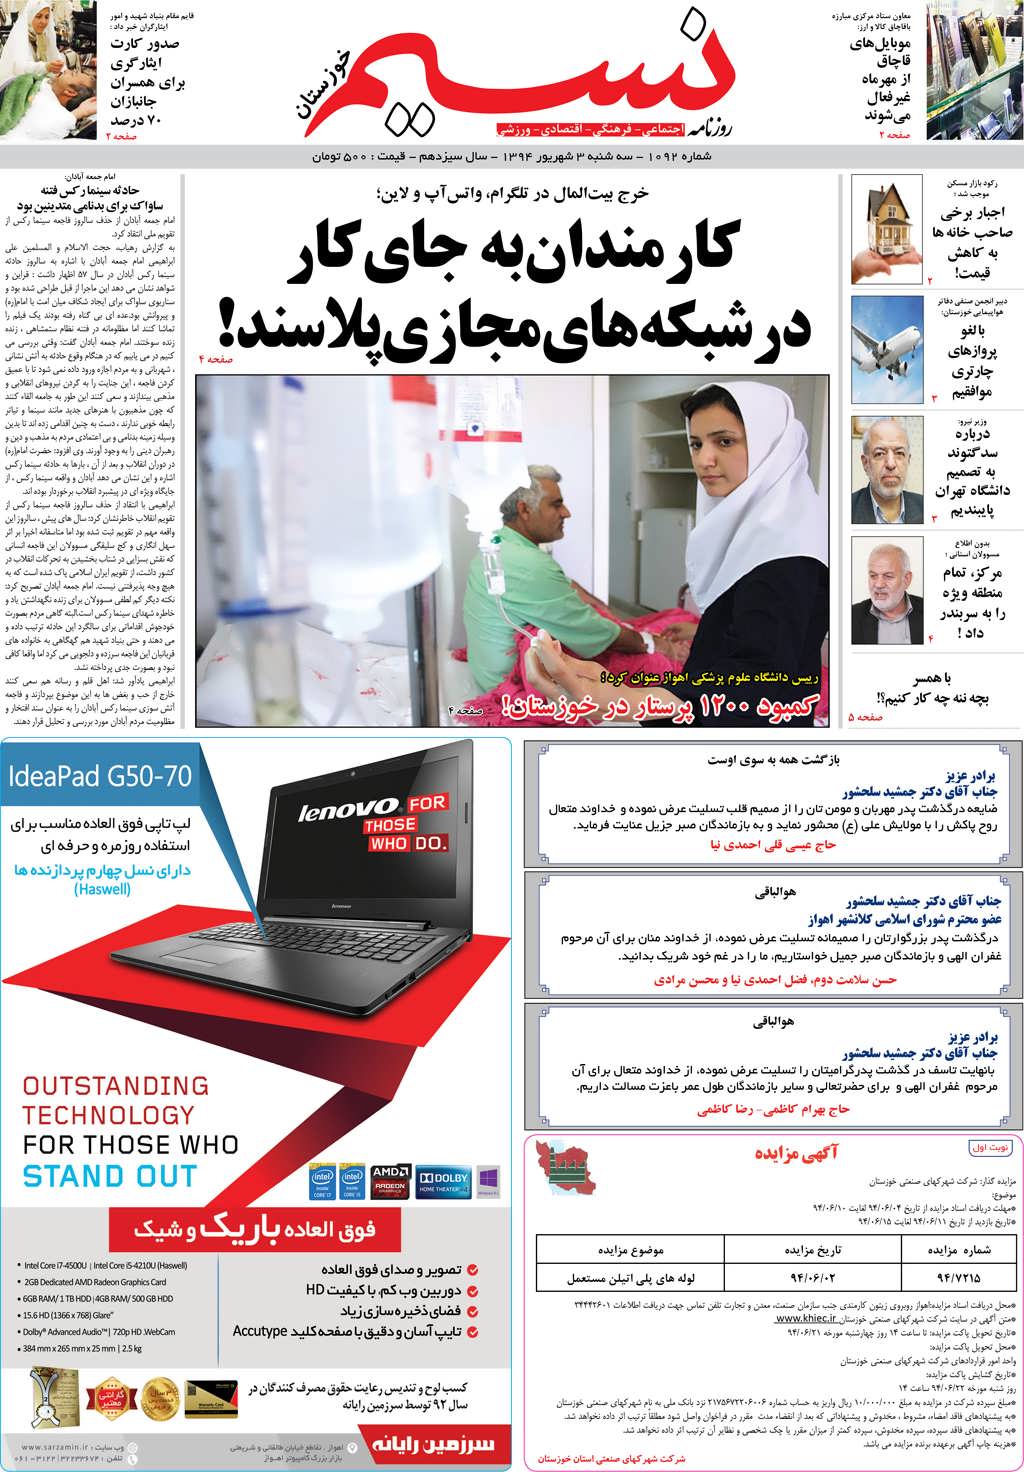 صفحه اصلی روزنامه نسیم شماره 1092